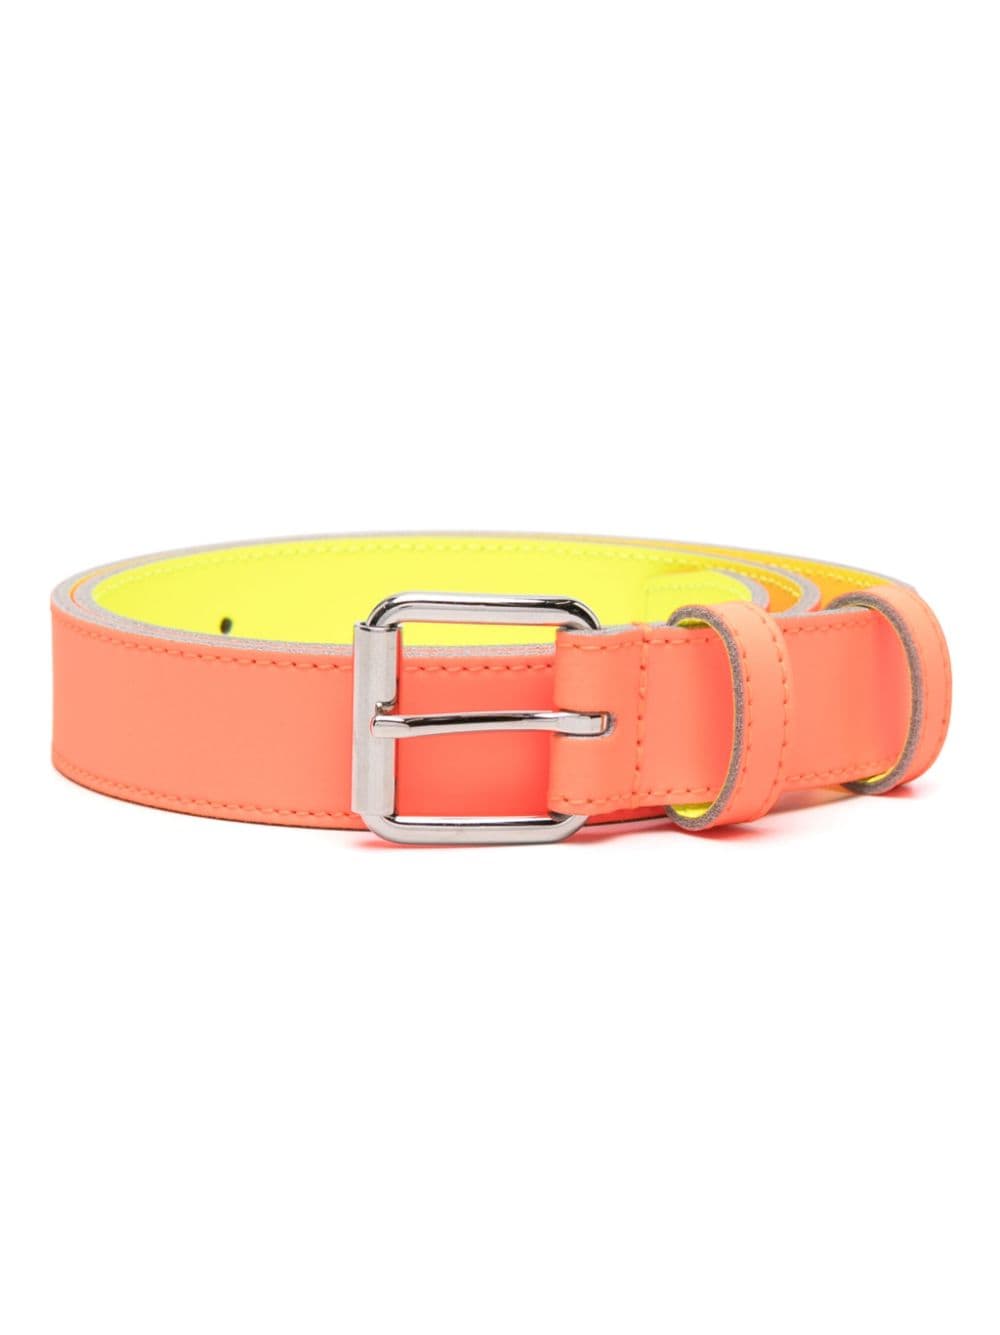 Comme Des Garçons Super Fluo Leather Belt In Orange